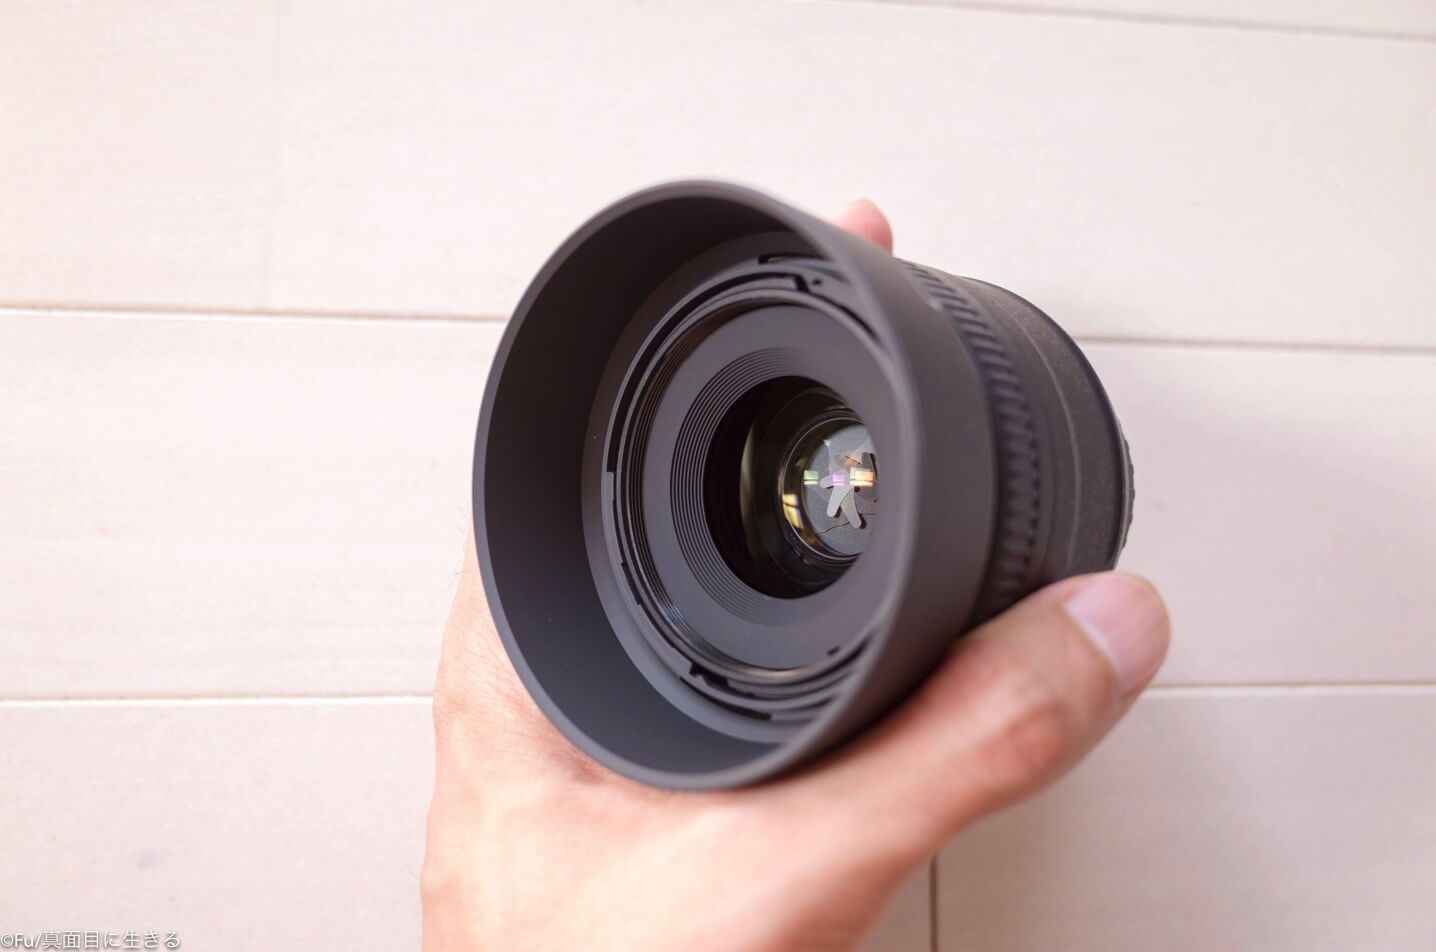 カメラ レンズ(単焦点) Nikon 単焦点レンズ「AF-S DX NIKKOR 35mm f/1.8G」を2本目のレンズ 